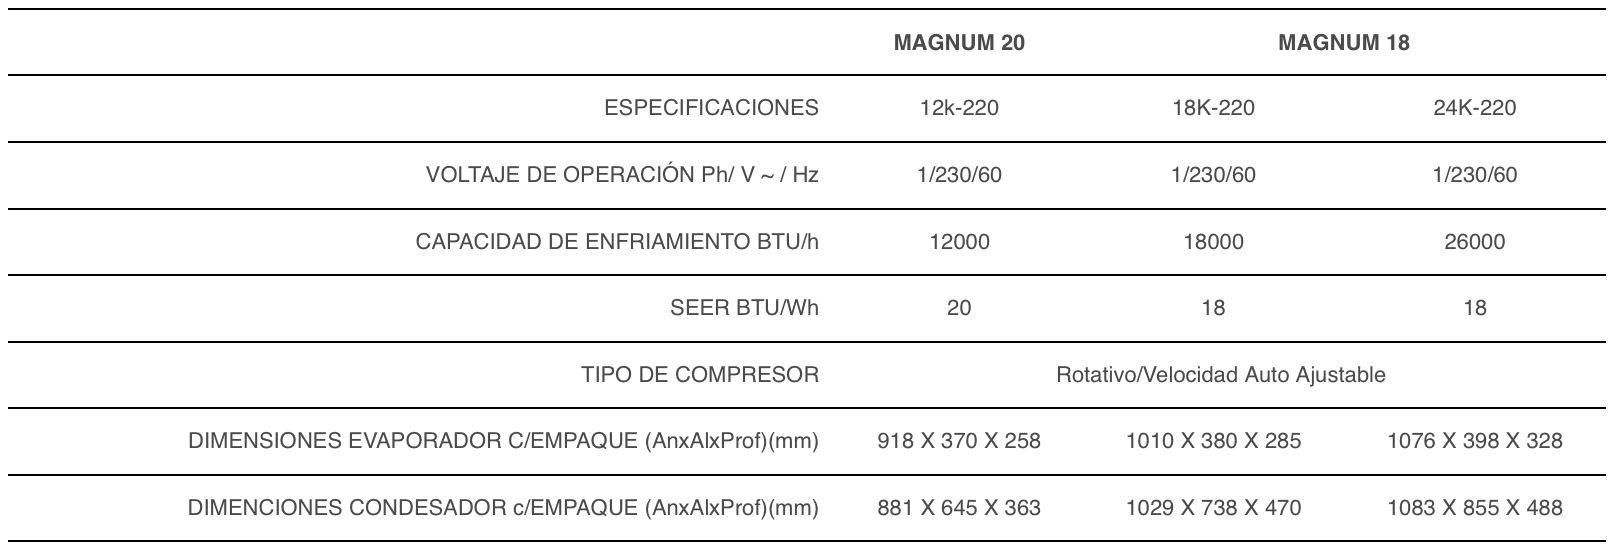 Especificaciones Minisplit Mirage Magnum 20